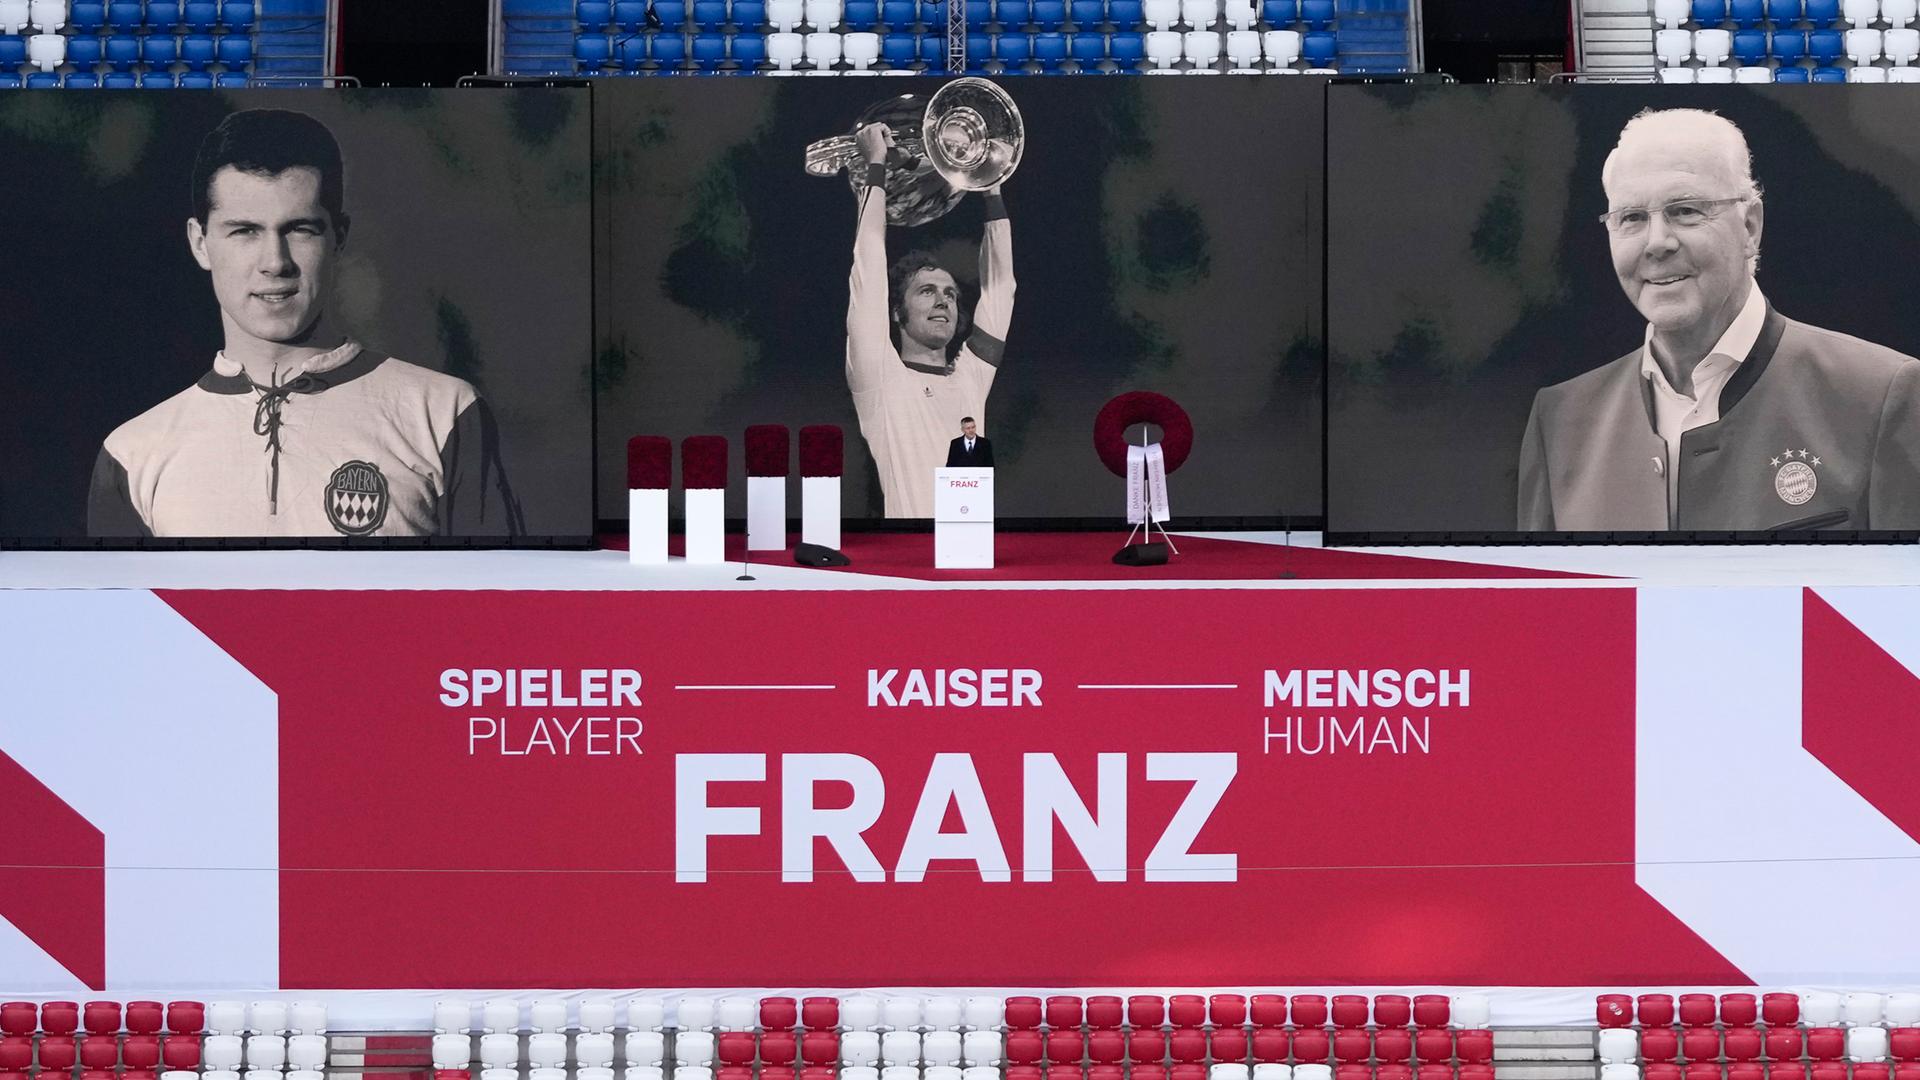 Bild von der Gedenk-Feier: Über den Sitzen im Stadion ist ein großes Plakat. Darauf steht "Spieler - Kaiser - Mensch". Außerdem sind darauf Schwarz-Weiß-Fotos von Franz Beckenbauer als er jung war und als er alt war.